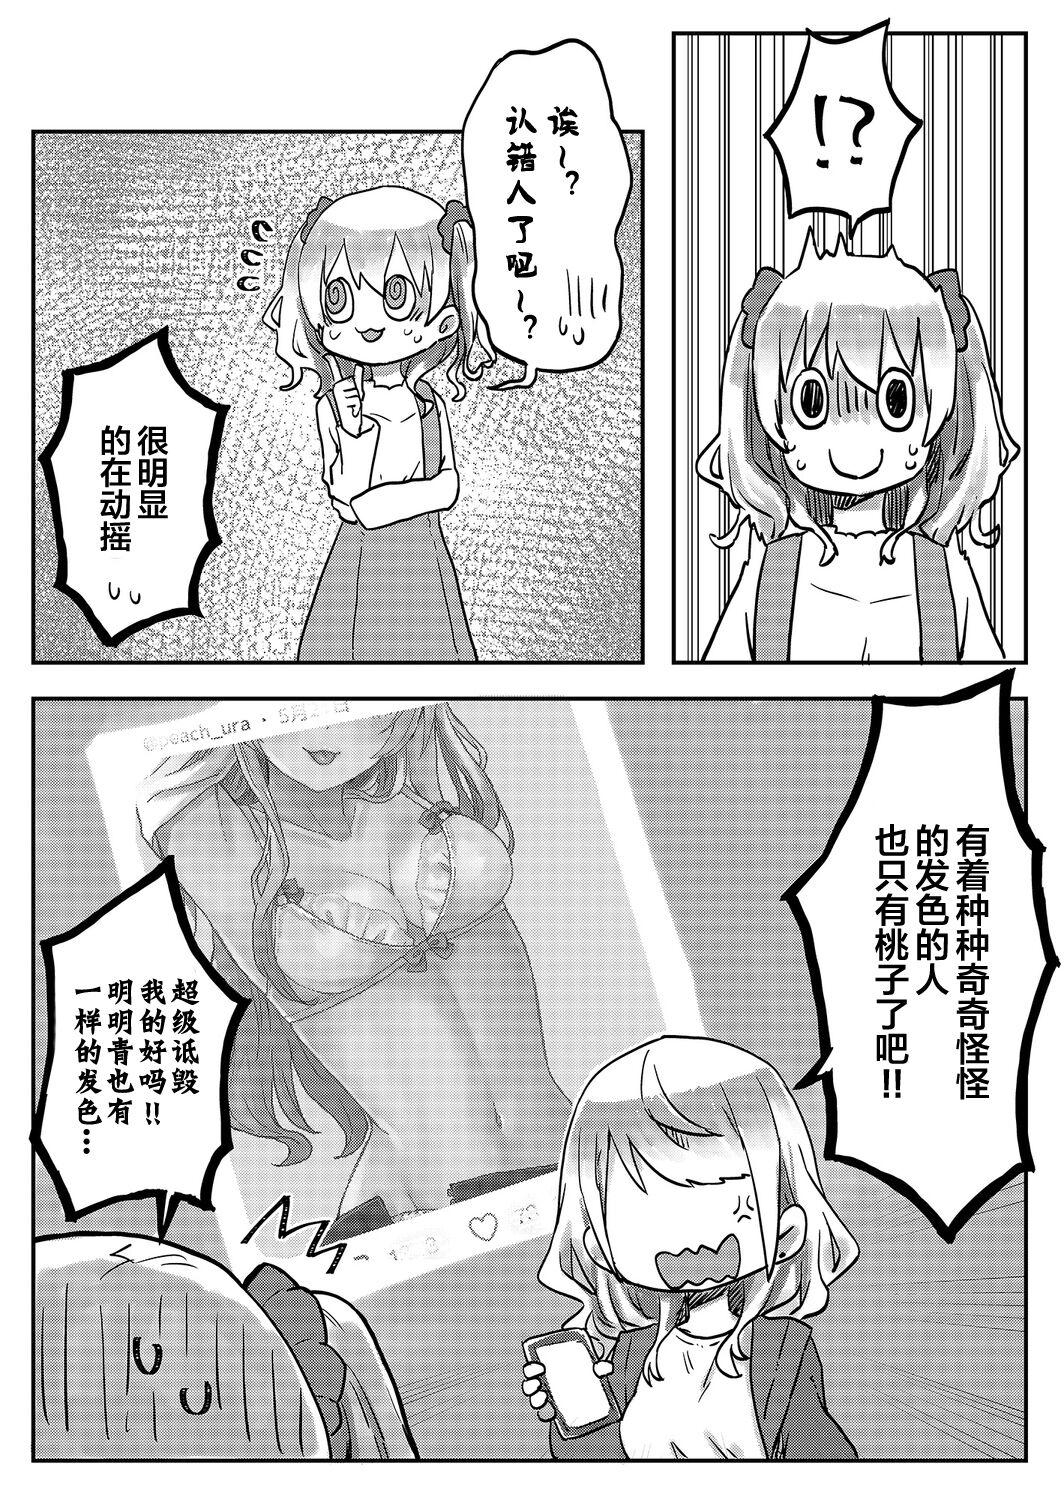 4some [LIN]futago shimaichann no yuri seikatu(5)【Dokiki汉化组】 Gape - Page 7